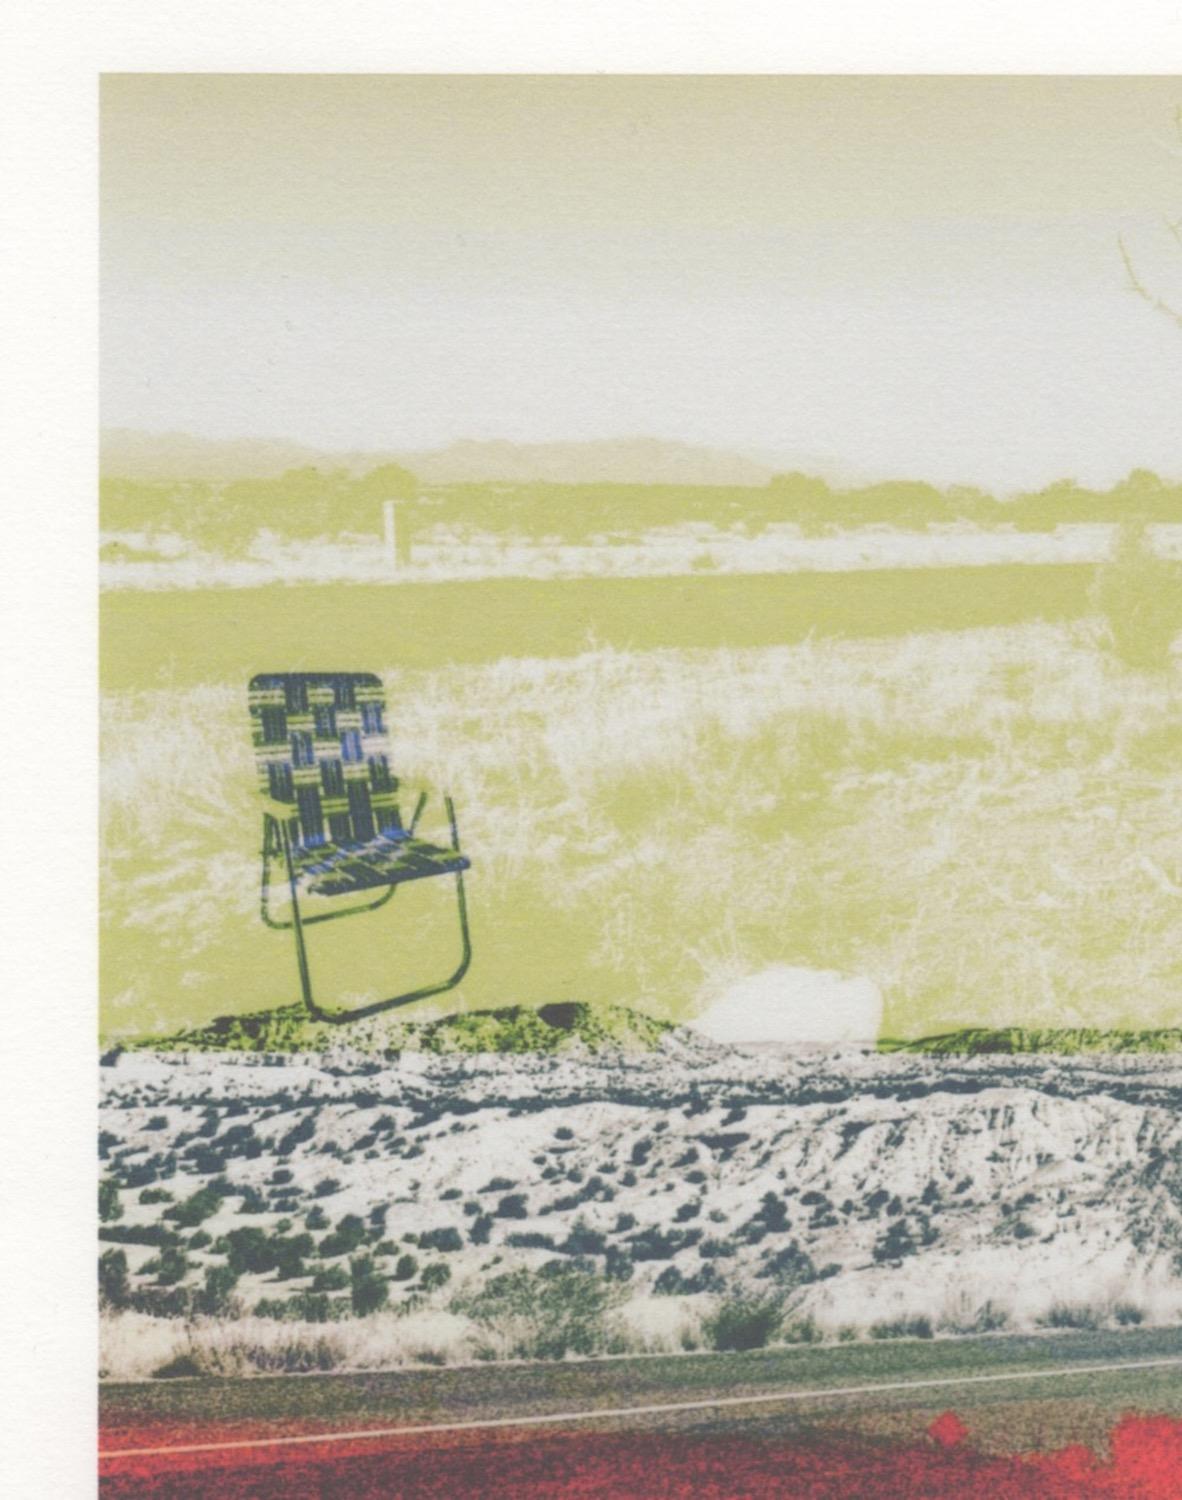 « Red Road Black Chair », photographie, paysage, sud-ouest, vert, monogravure - Contemporain Print par Patty deGrandpre